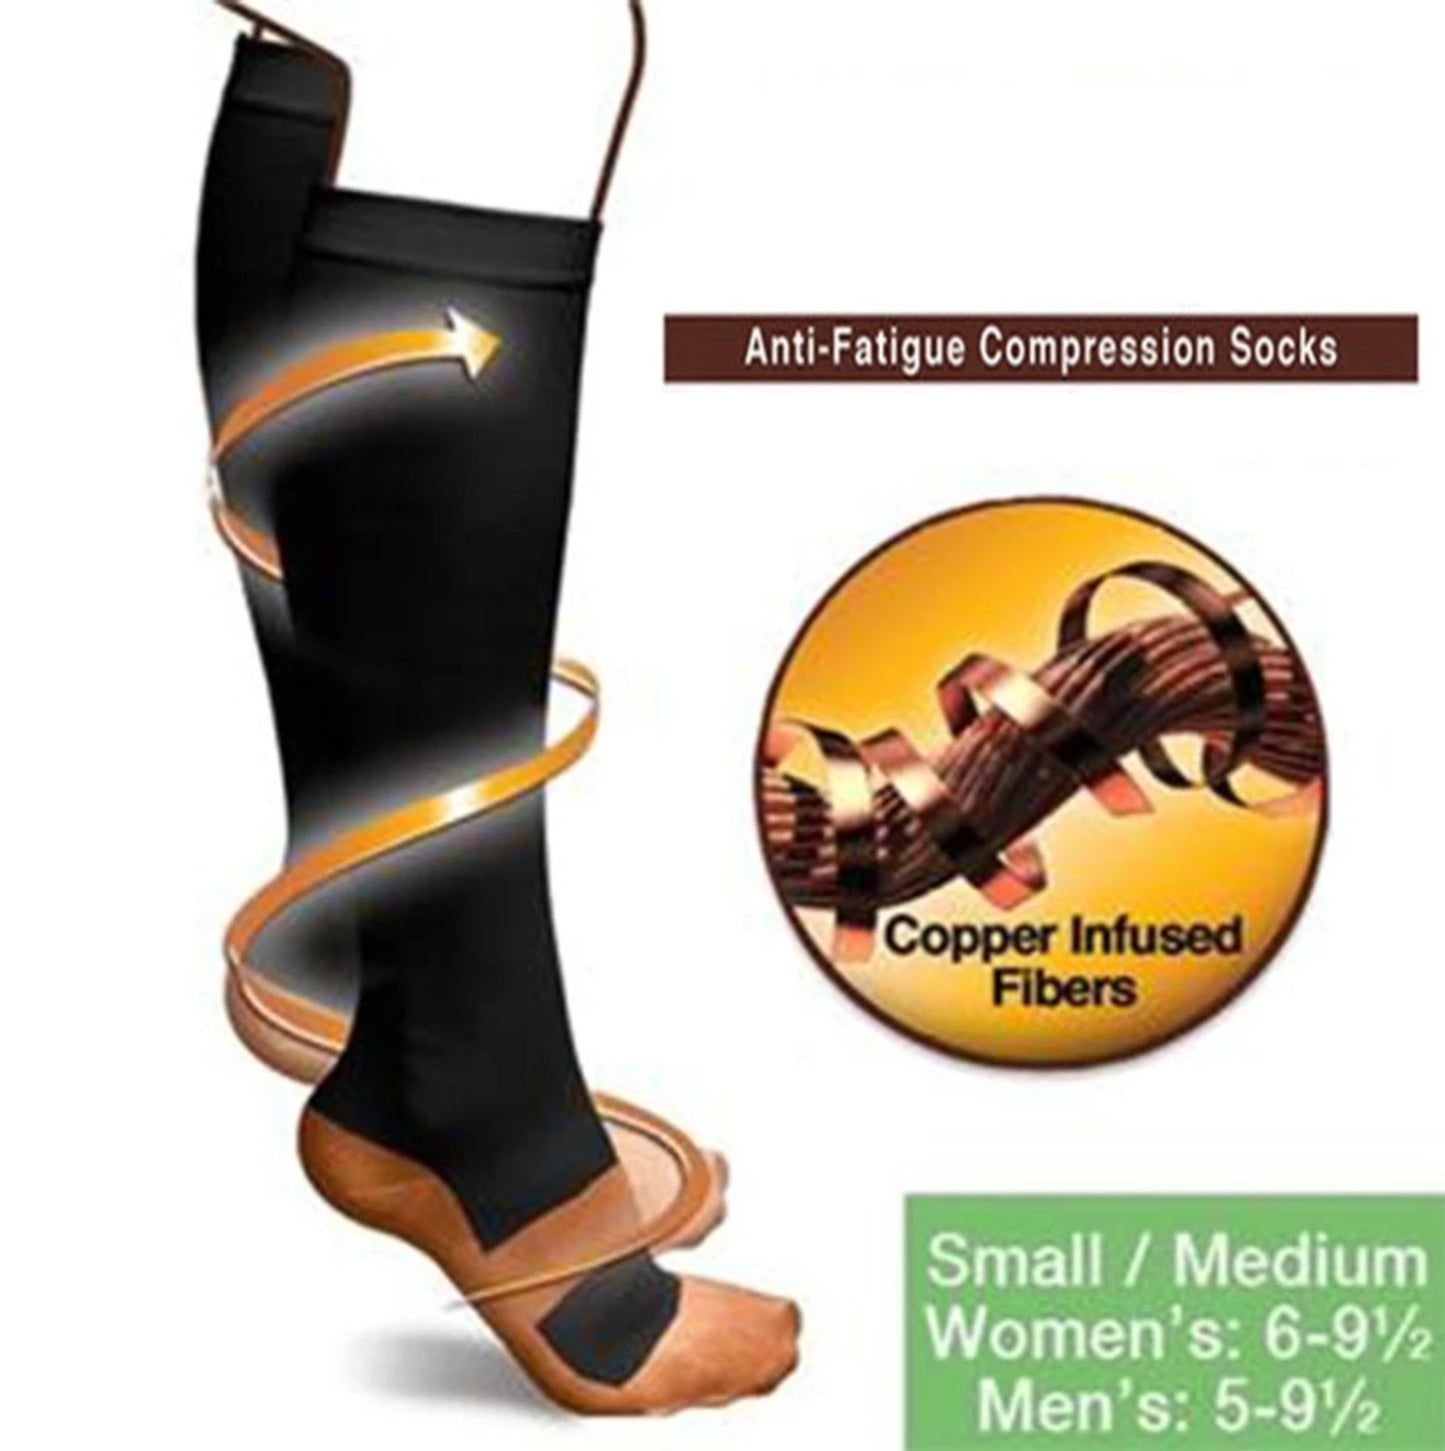 Copper Infused Anti-Fatigue Compression Socks